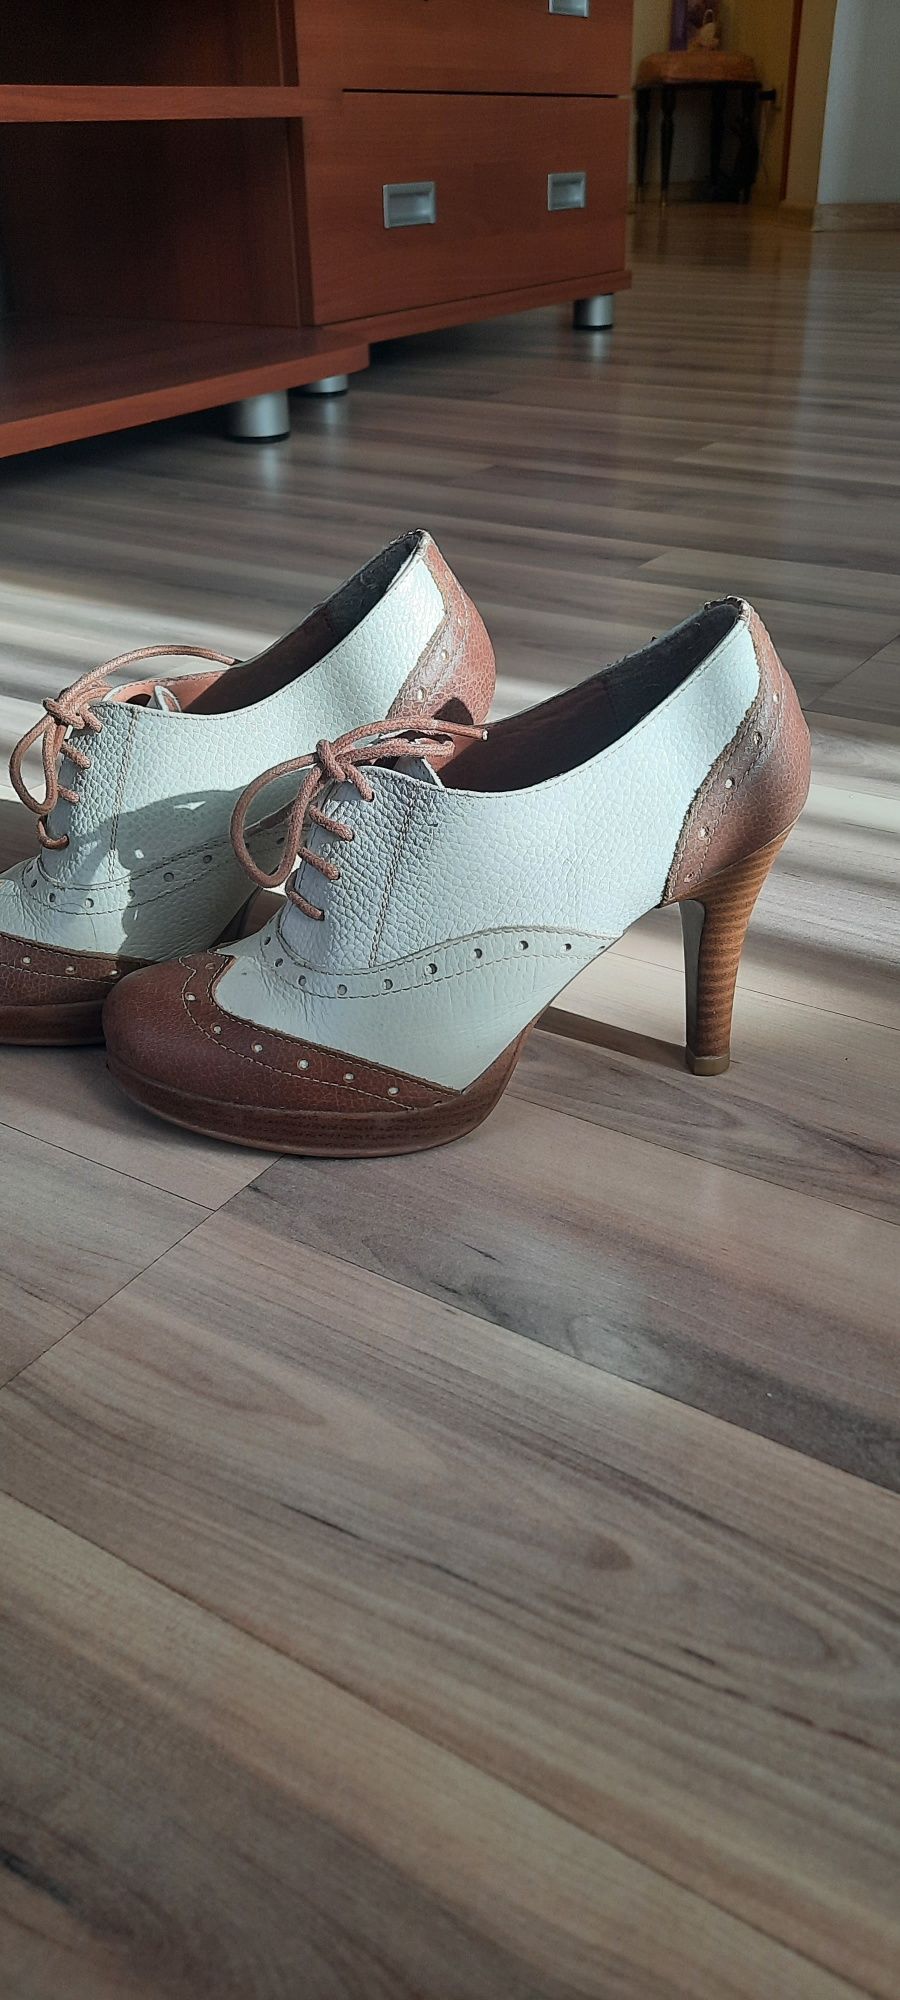 Женская обувь, ботильоеы, 35размер